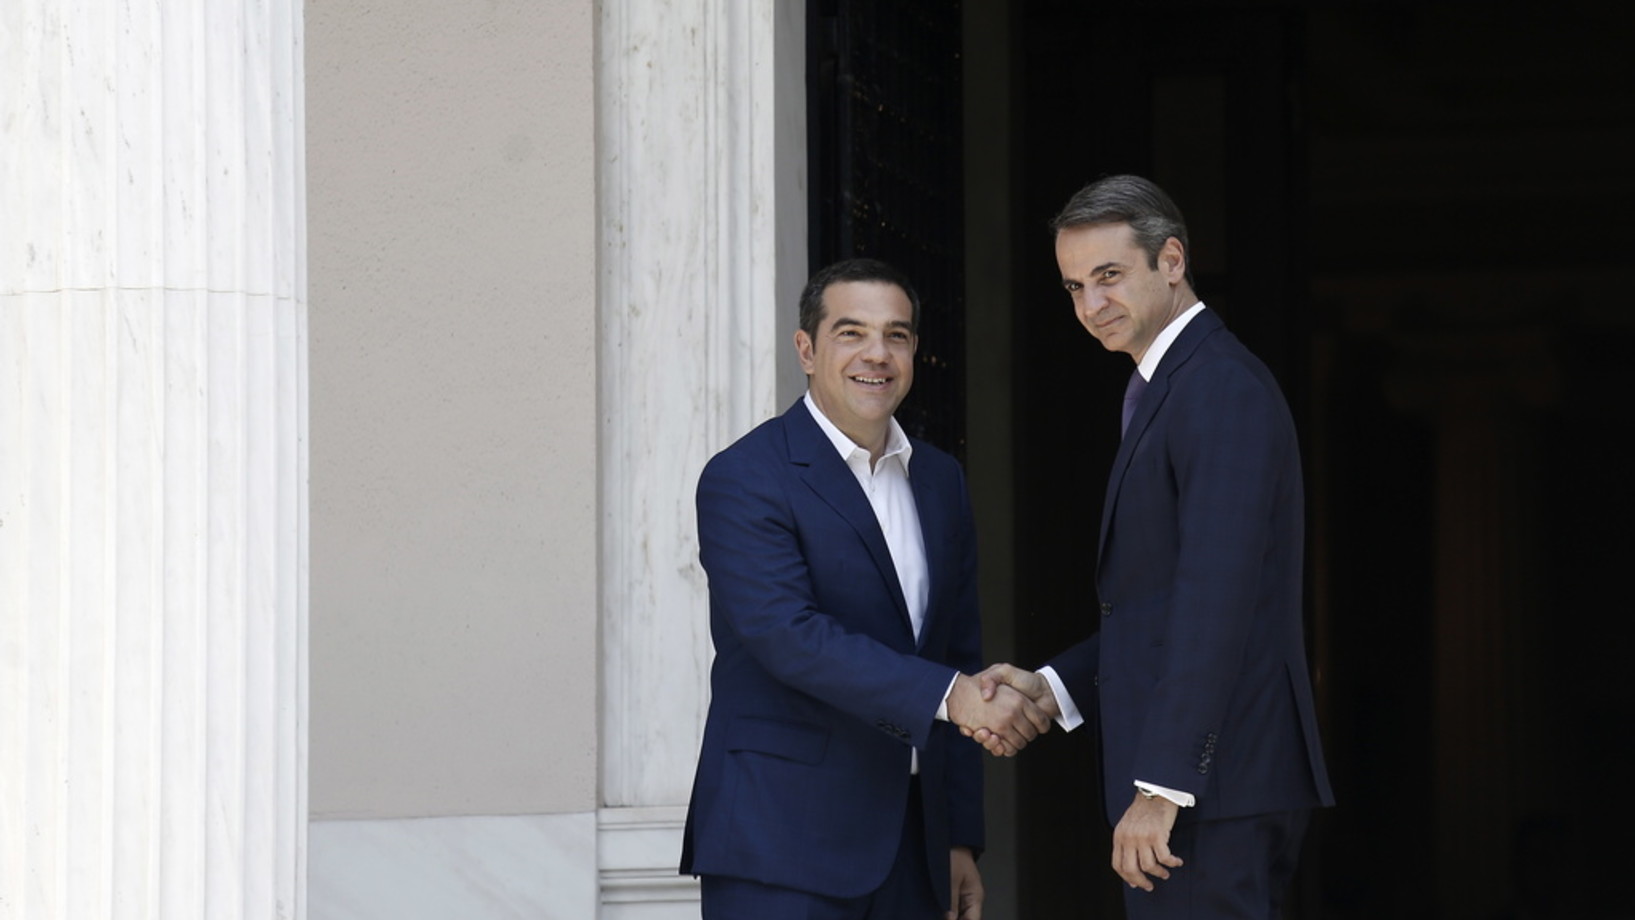 Der alte und der neue Ministerpräsident. Der abtretende Regierungschef Alexis Tsipras (links) und der Wahlsieger Kyriakos Mitsotakis am Montag in Athen. (Foto: Keystone/EPA ANA-MPA/Kostas Tsironis)